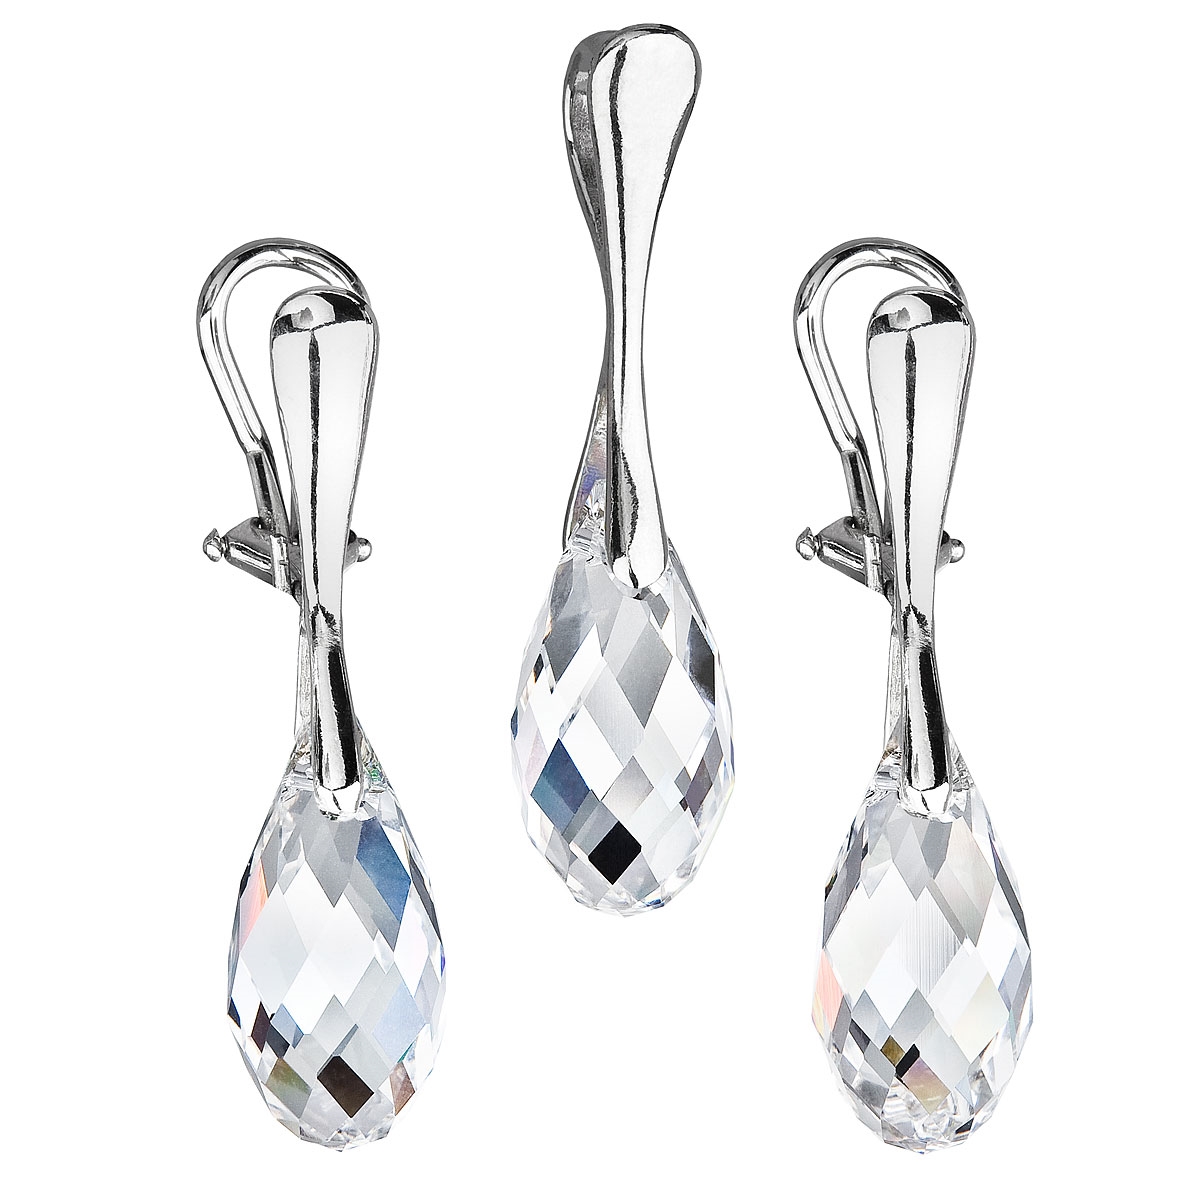 Sada šperkov sa slzičkami Crystals from Swarovski ® Crystal